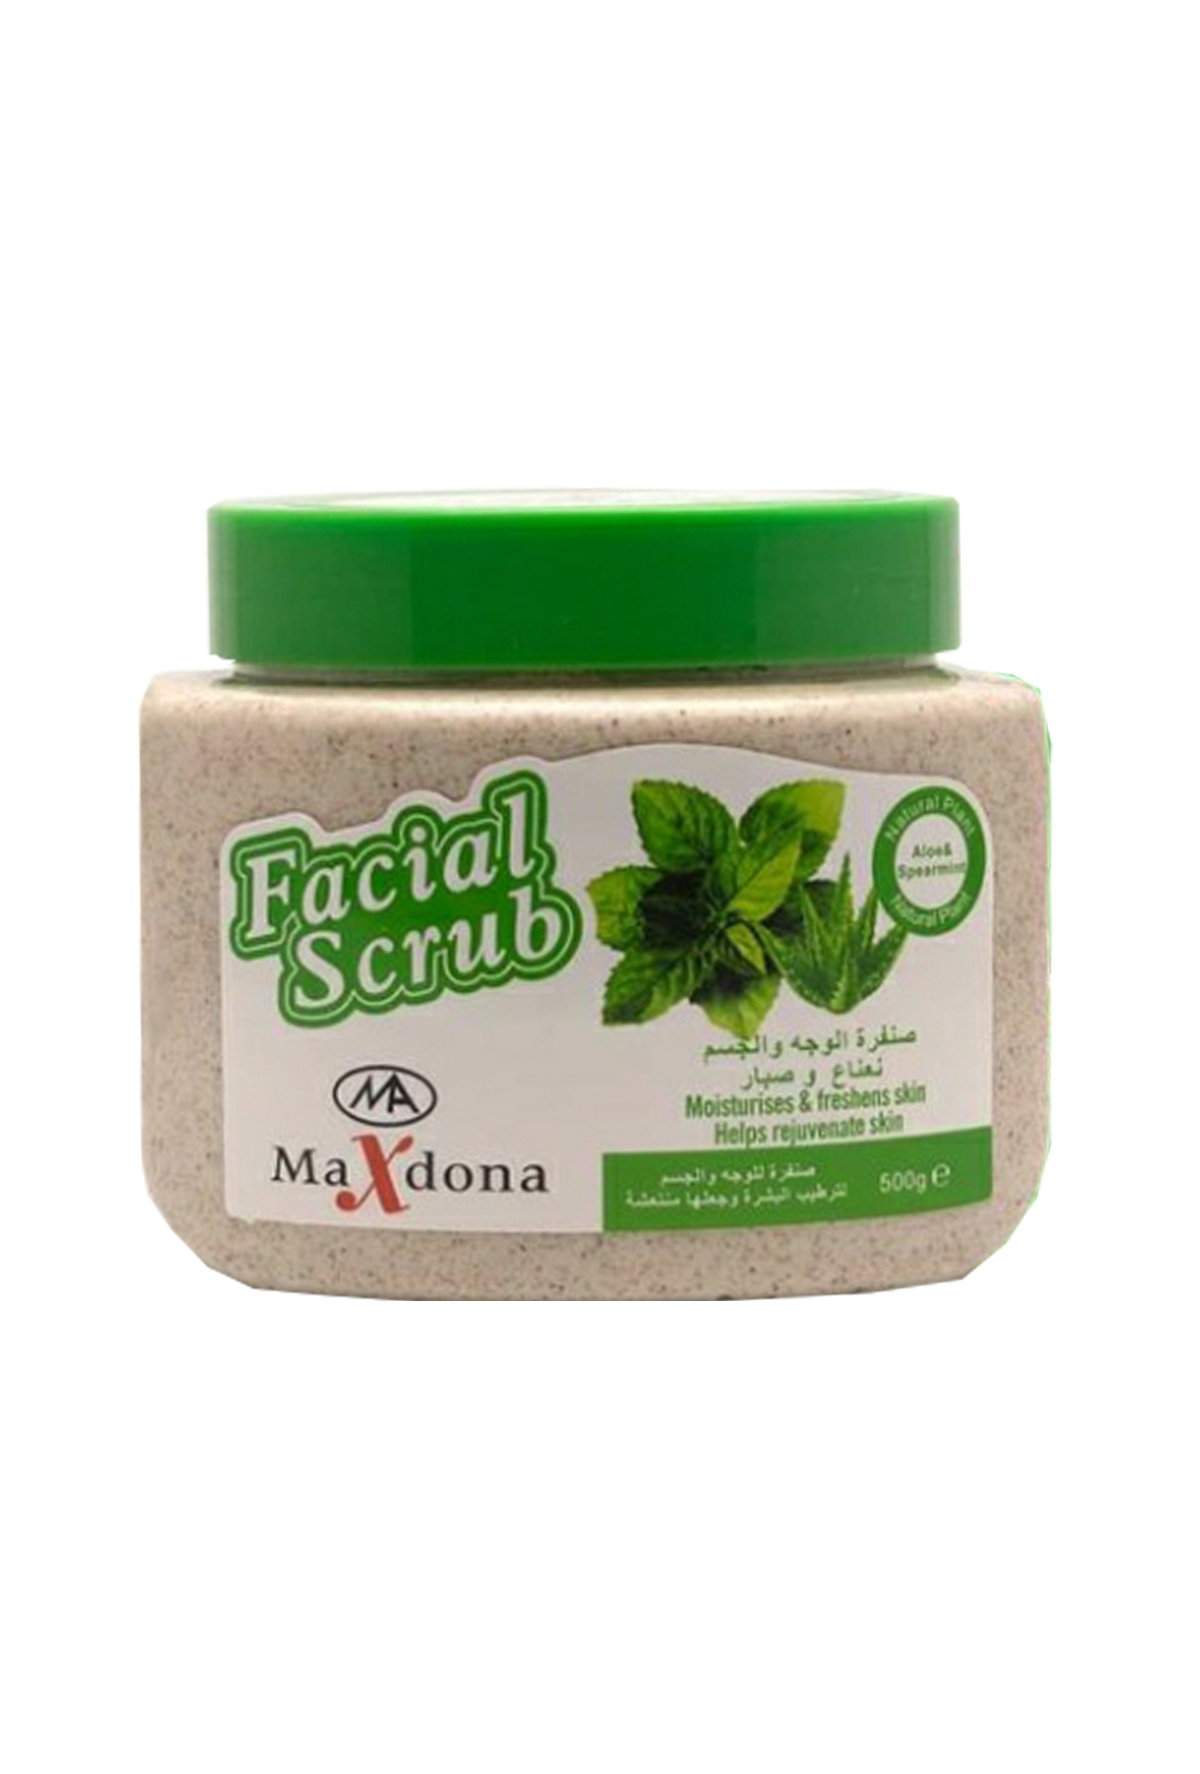 Maxdona face and body scrub with mint and aloe vera extracts